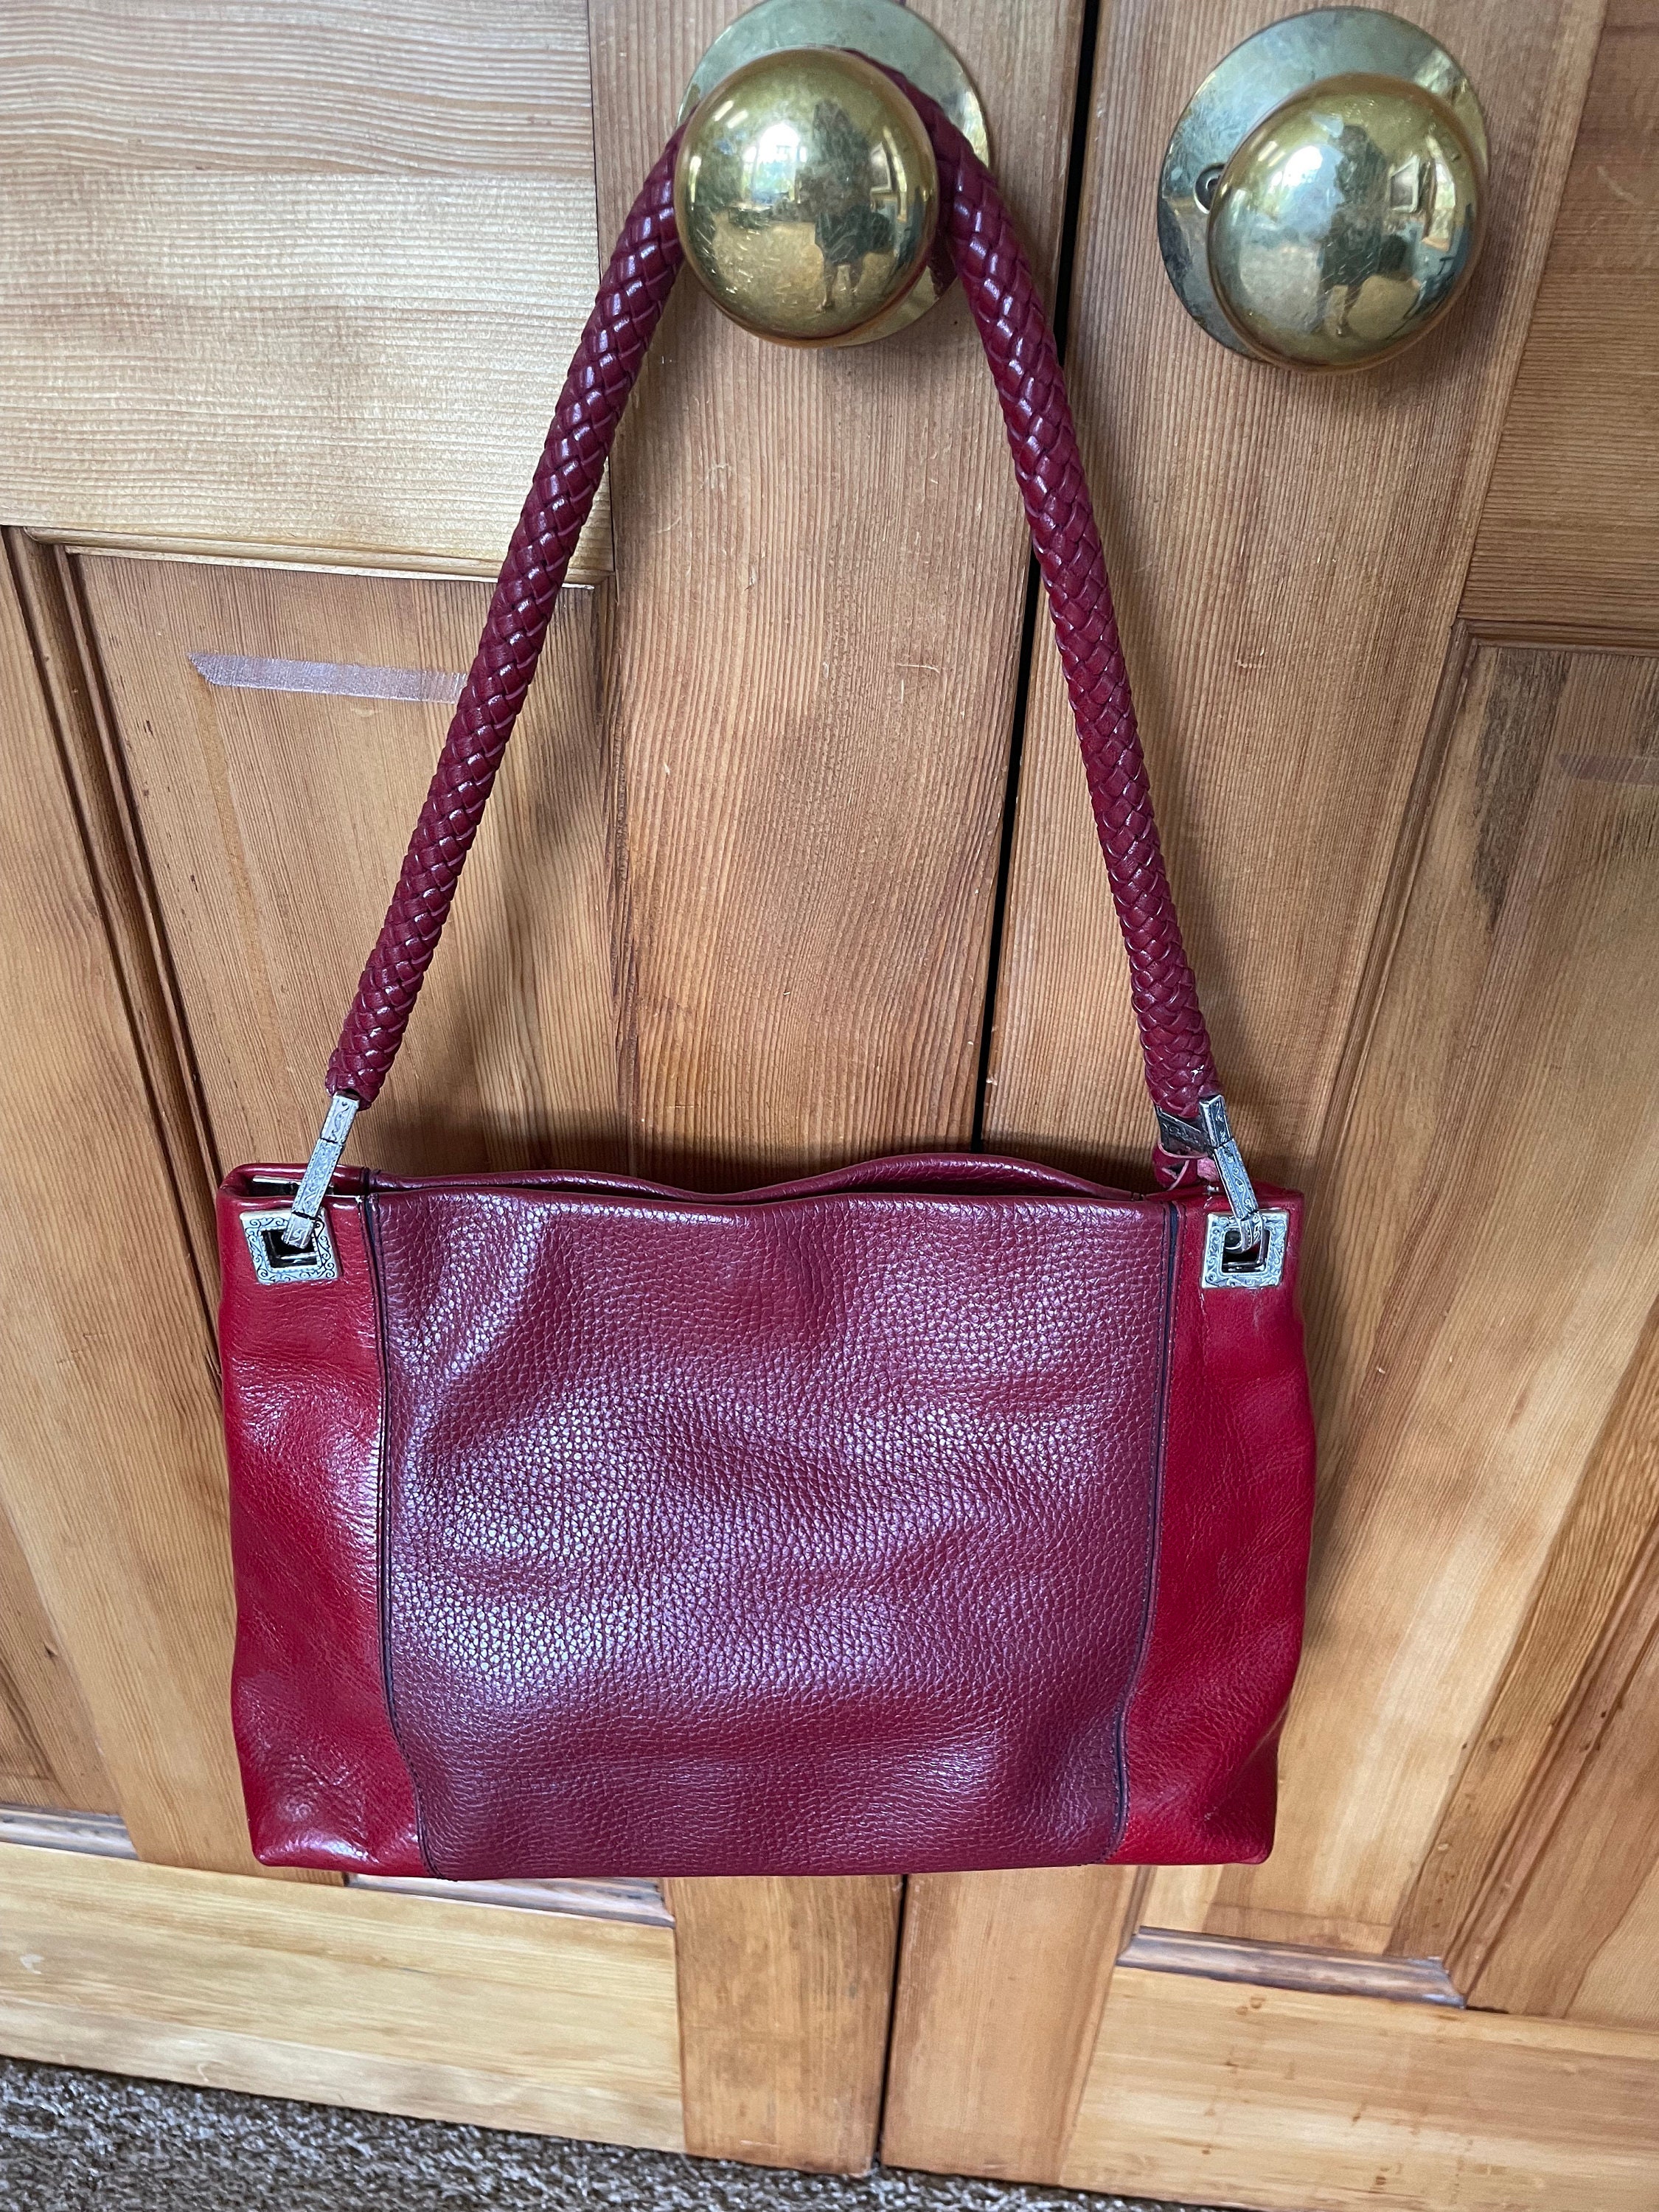 Brighton heart red handbag purse | Red handbag, Red leather bag, Handbag